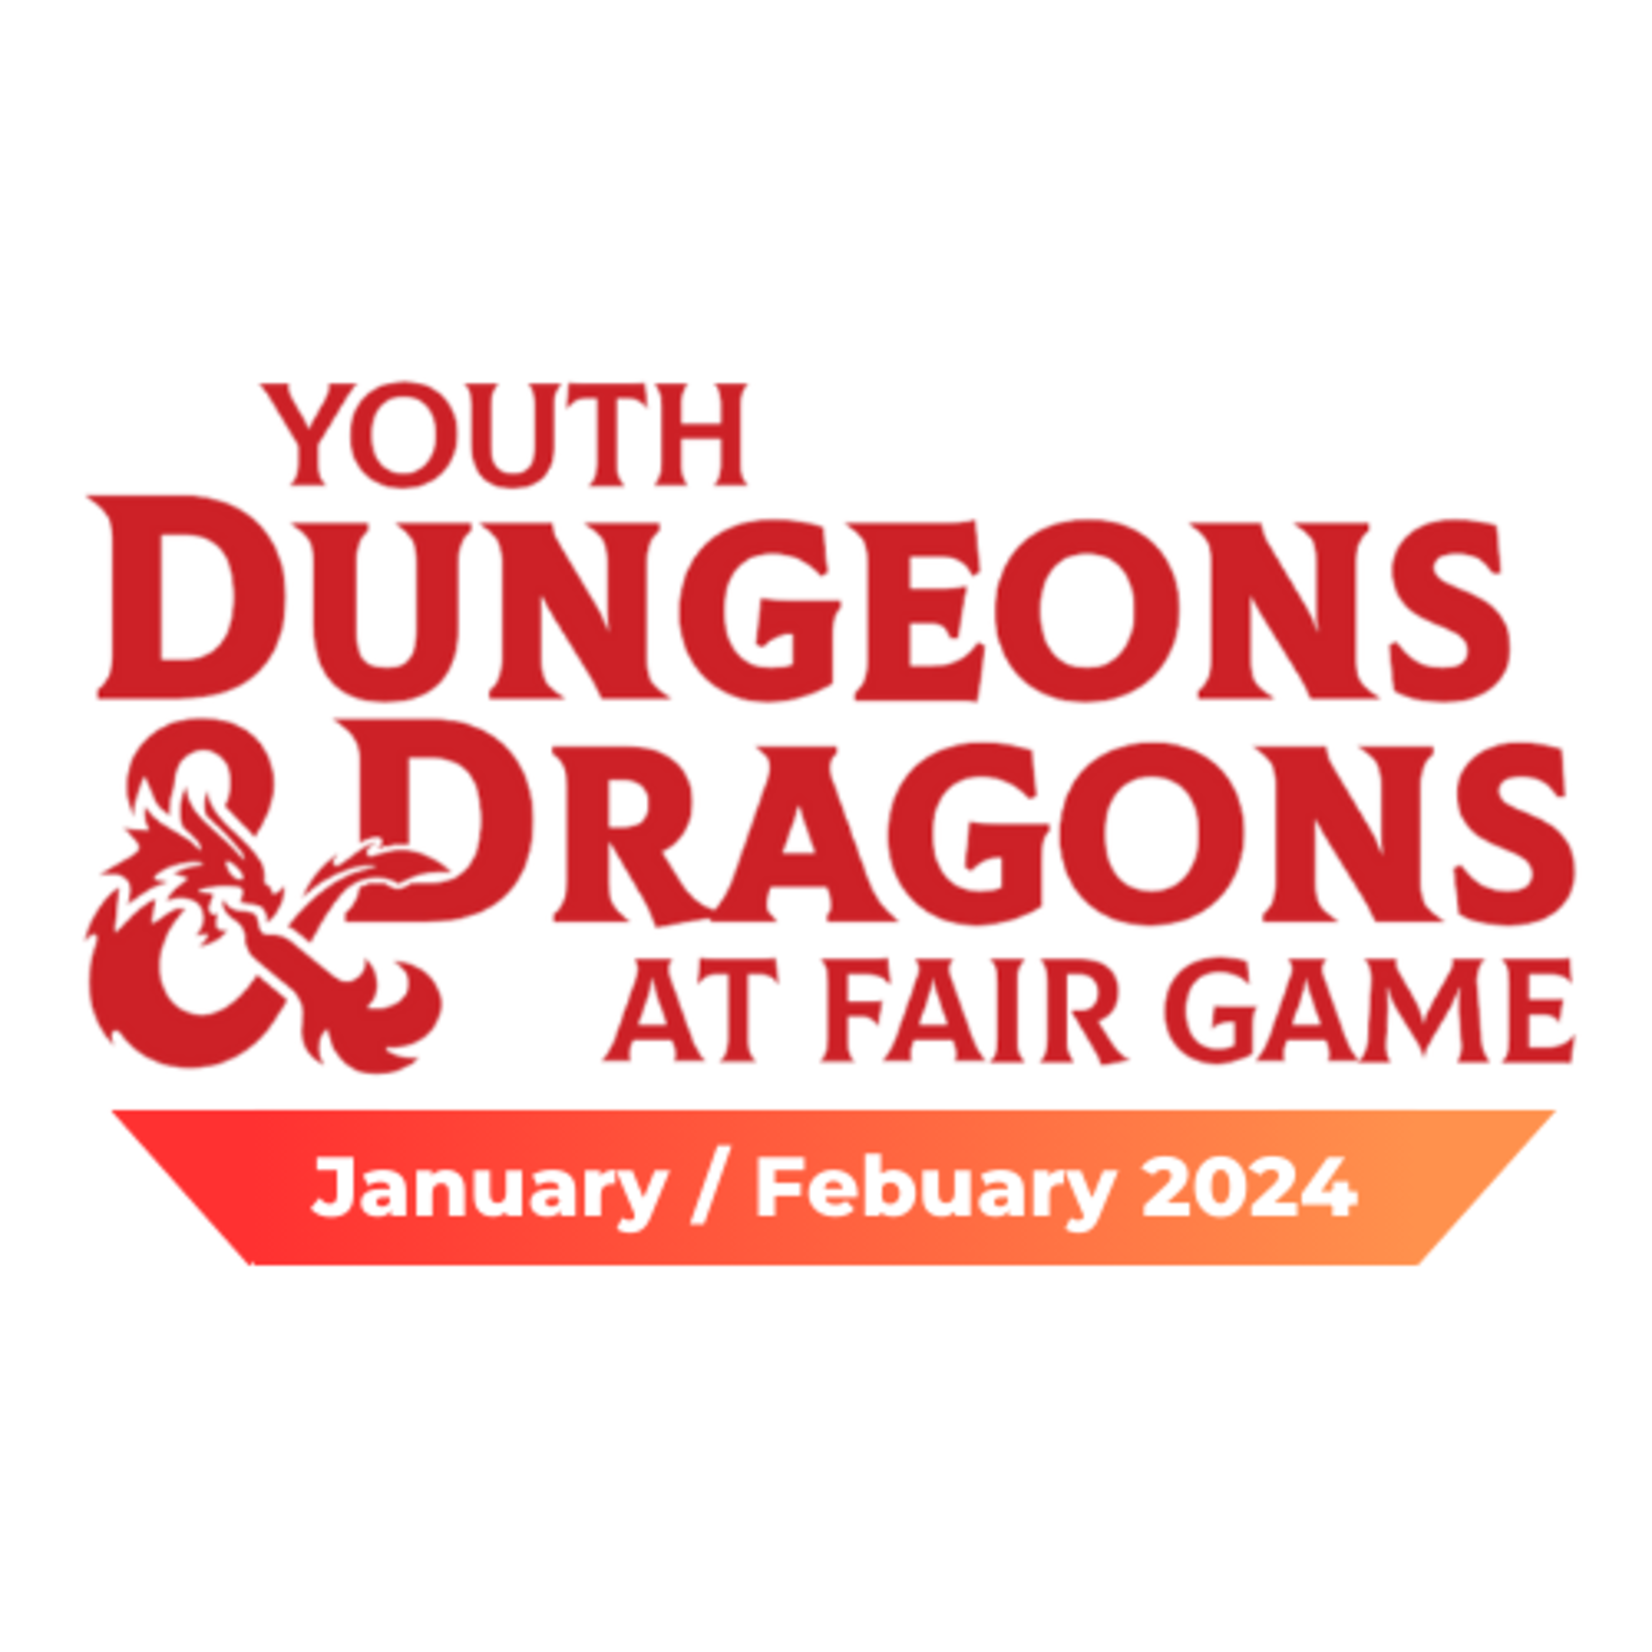 Fair Game YDND Jan/Feb 2024: Sunday - Group VU1 Virtual 11-1 PM CST (Ages 8-13)